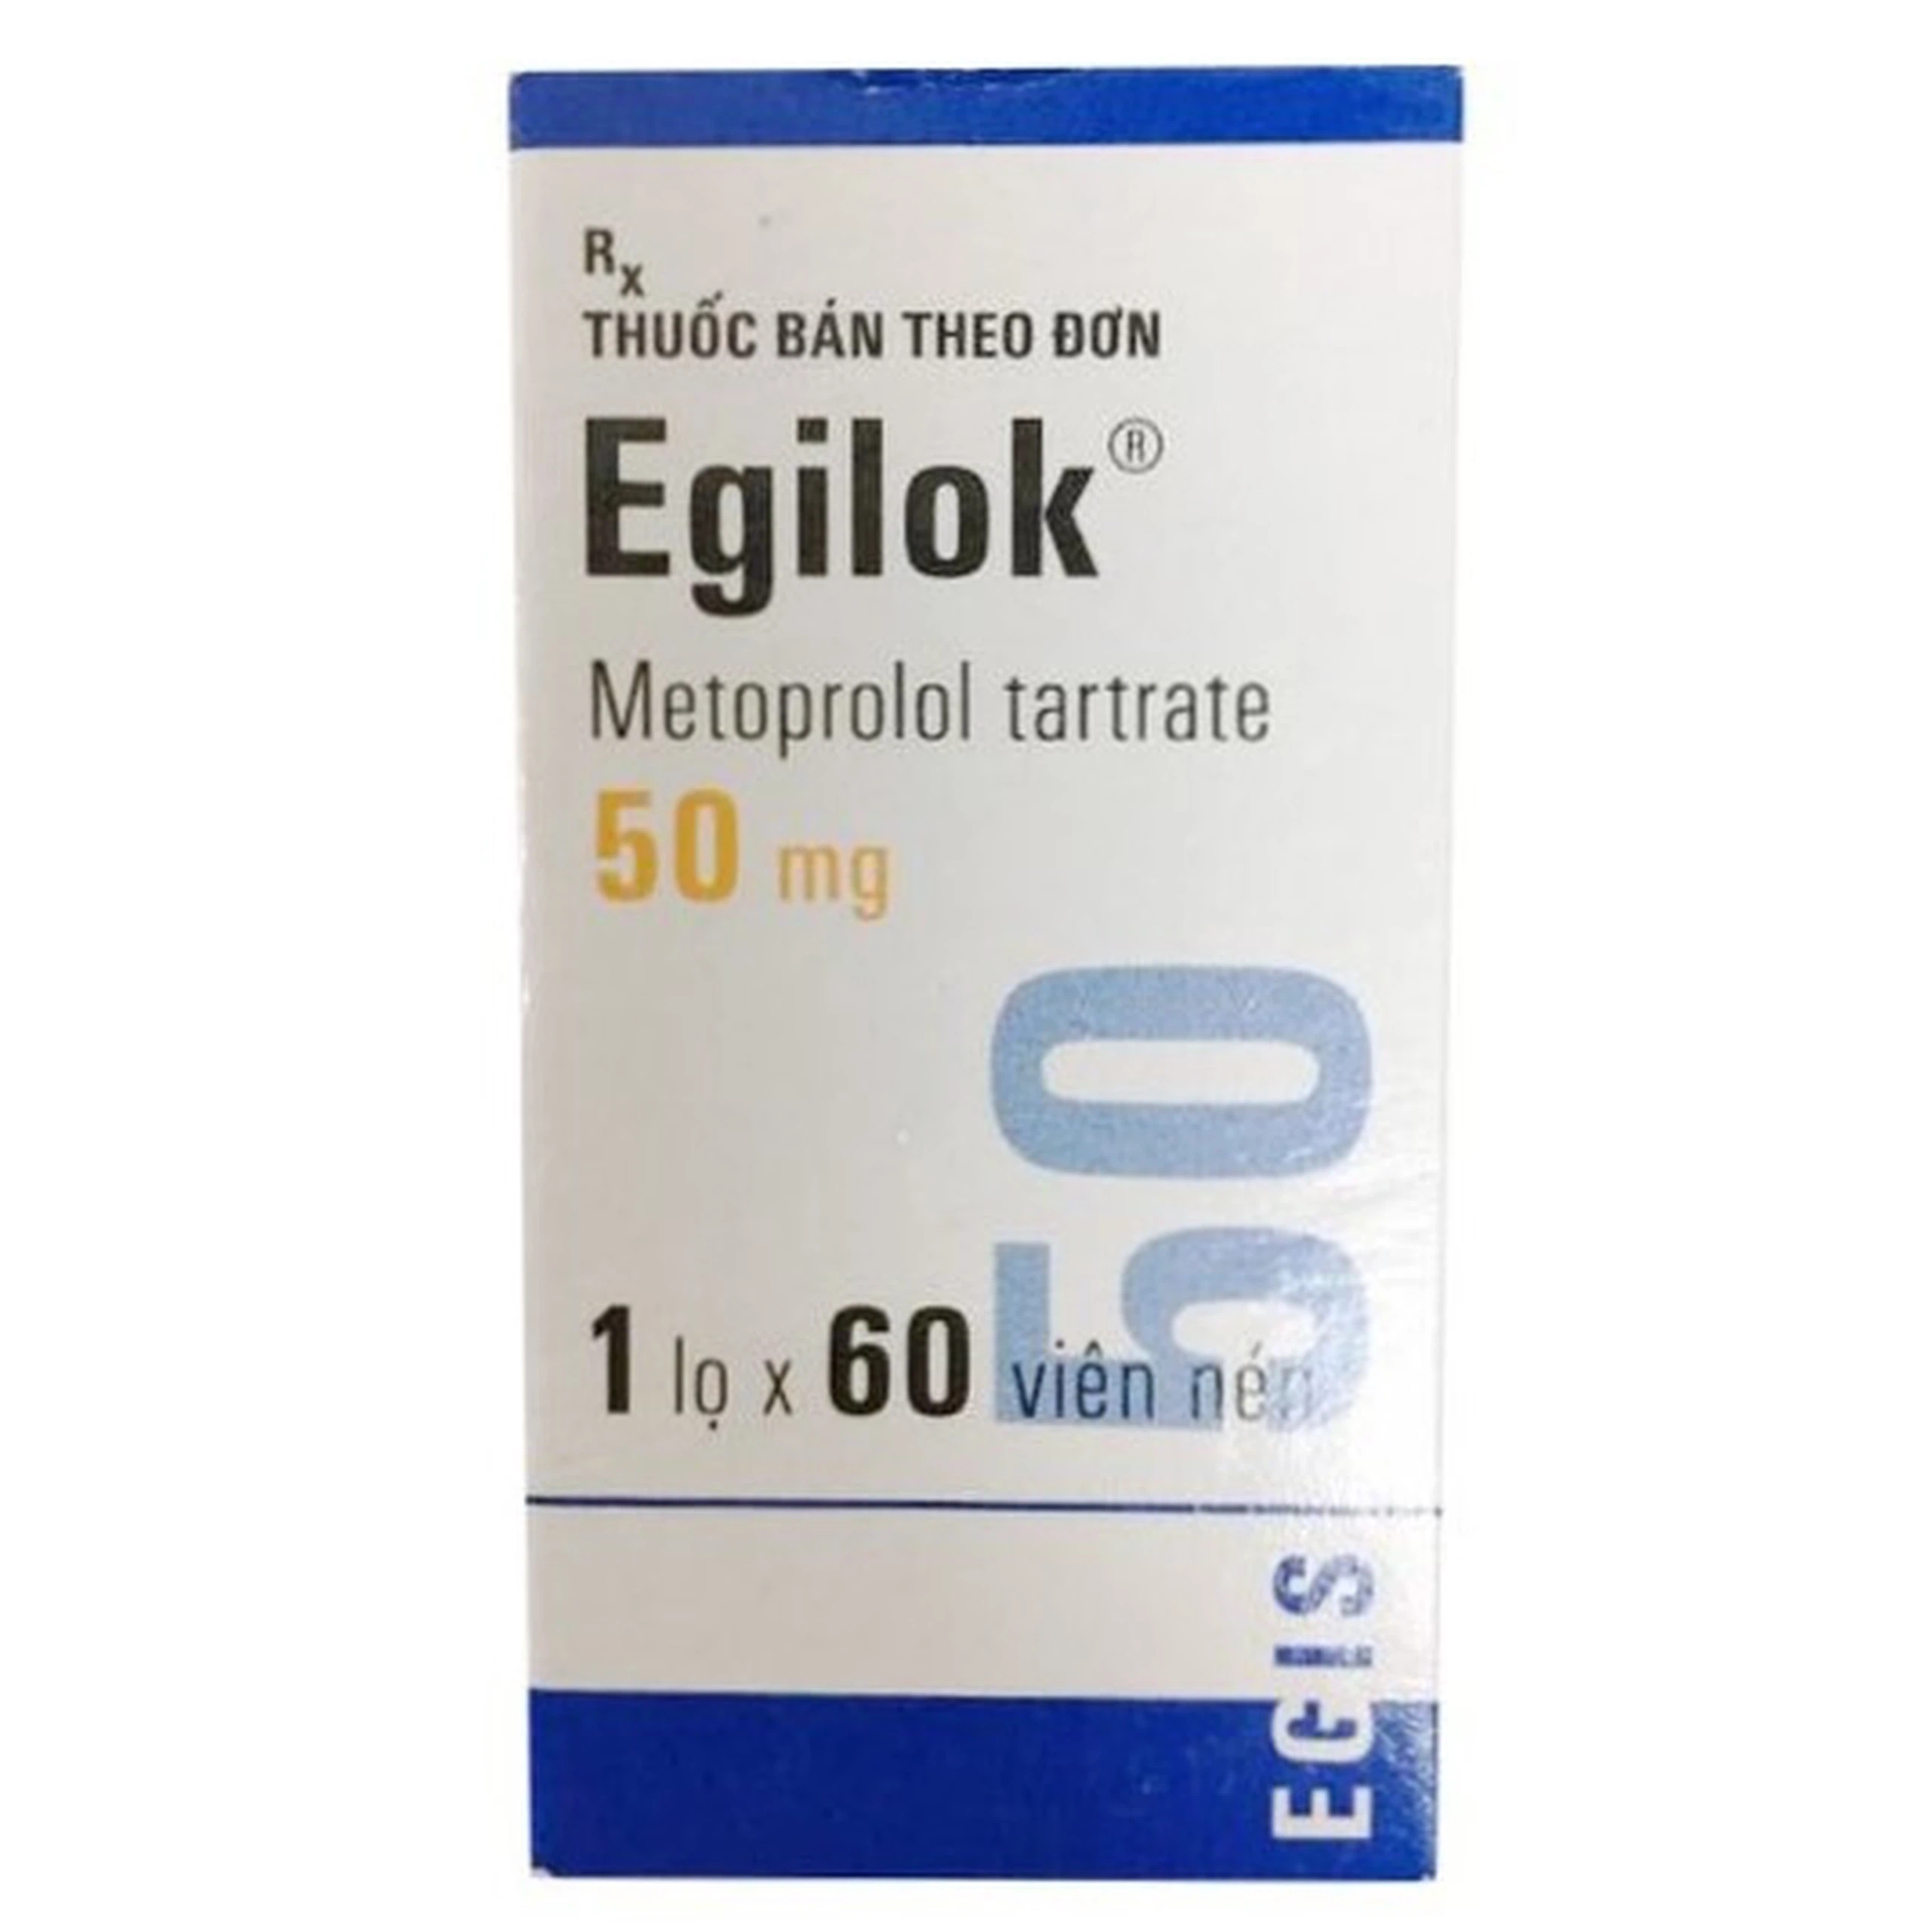 Thuốc Egilok 50mg Egis Pharma điều trị tăng huyết áp, đau thắt ngực (60 viên)